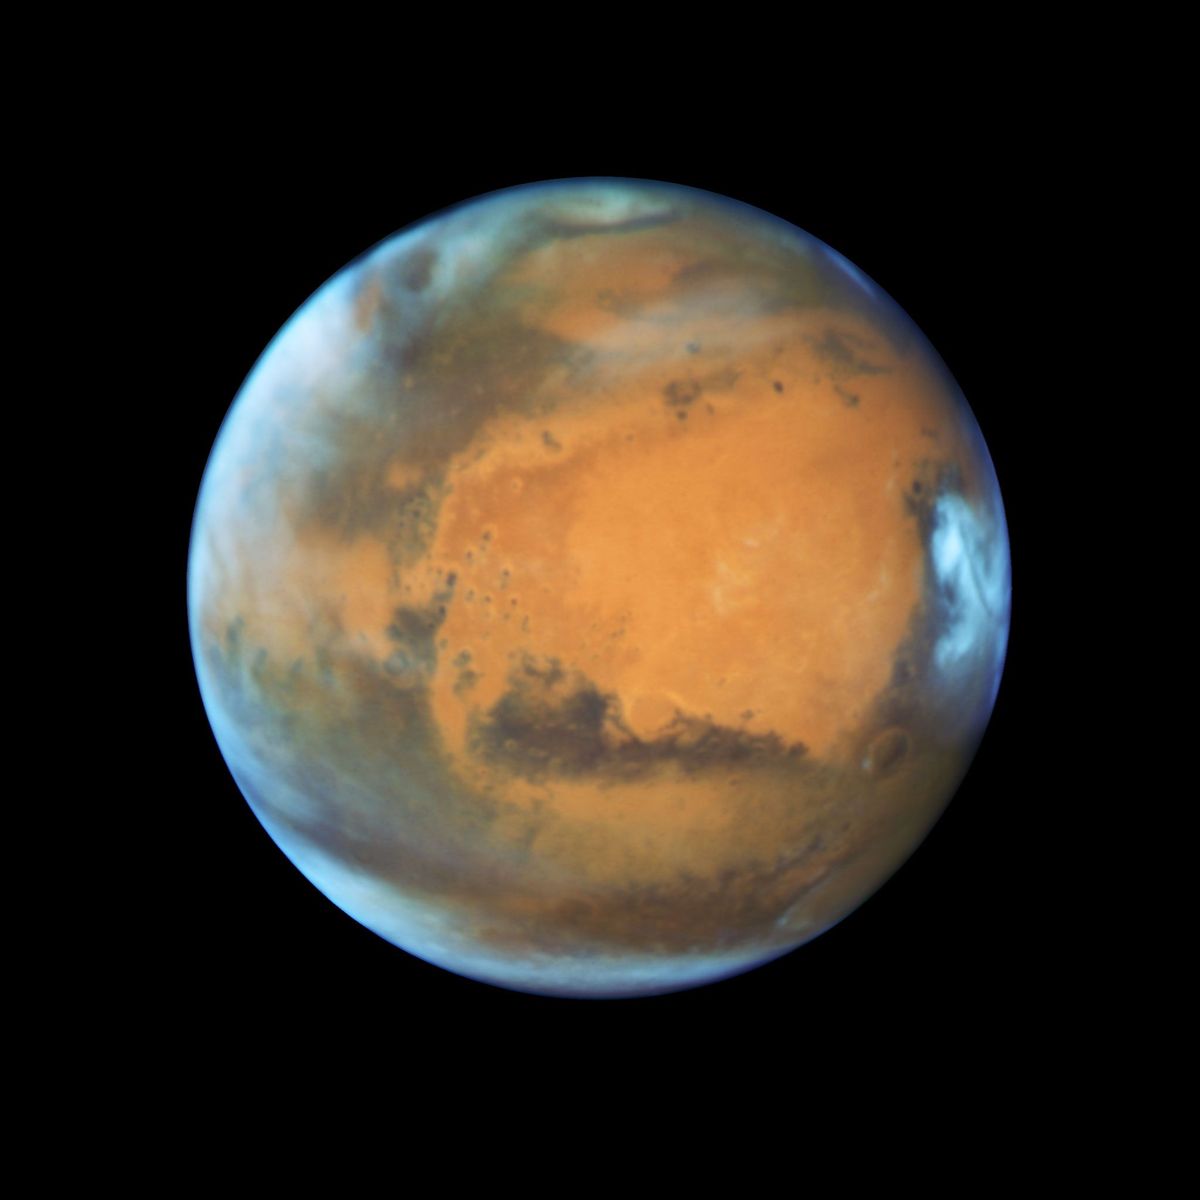 De ruimtetelescoop Hubble maakte deze opname van Mars kort voordat de planeet in 2016 in oppositie kwam te staan